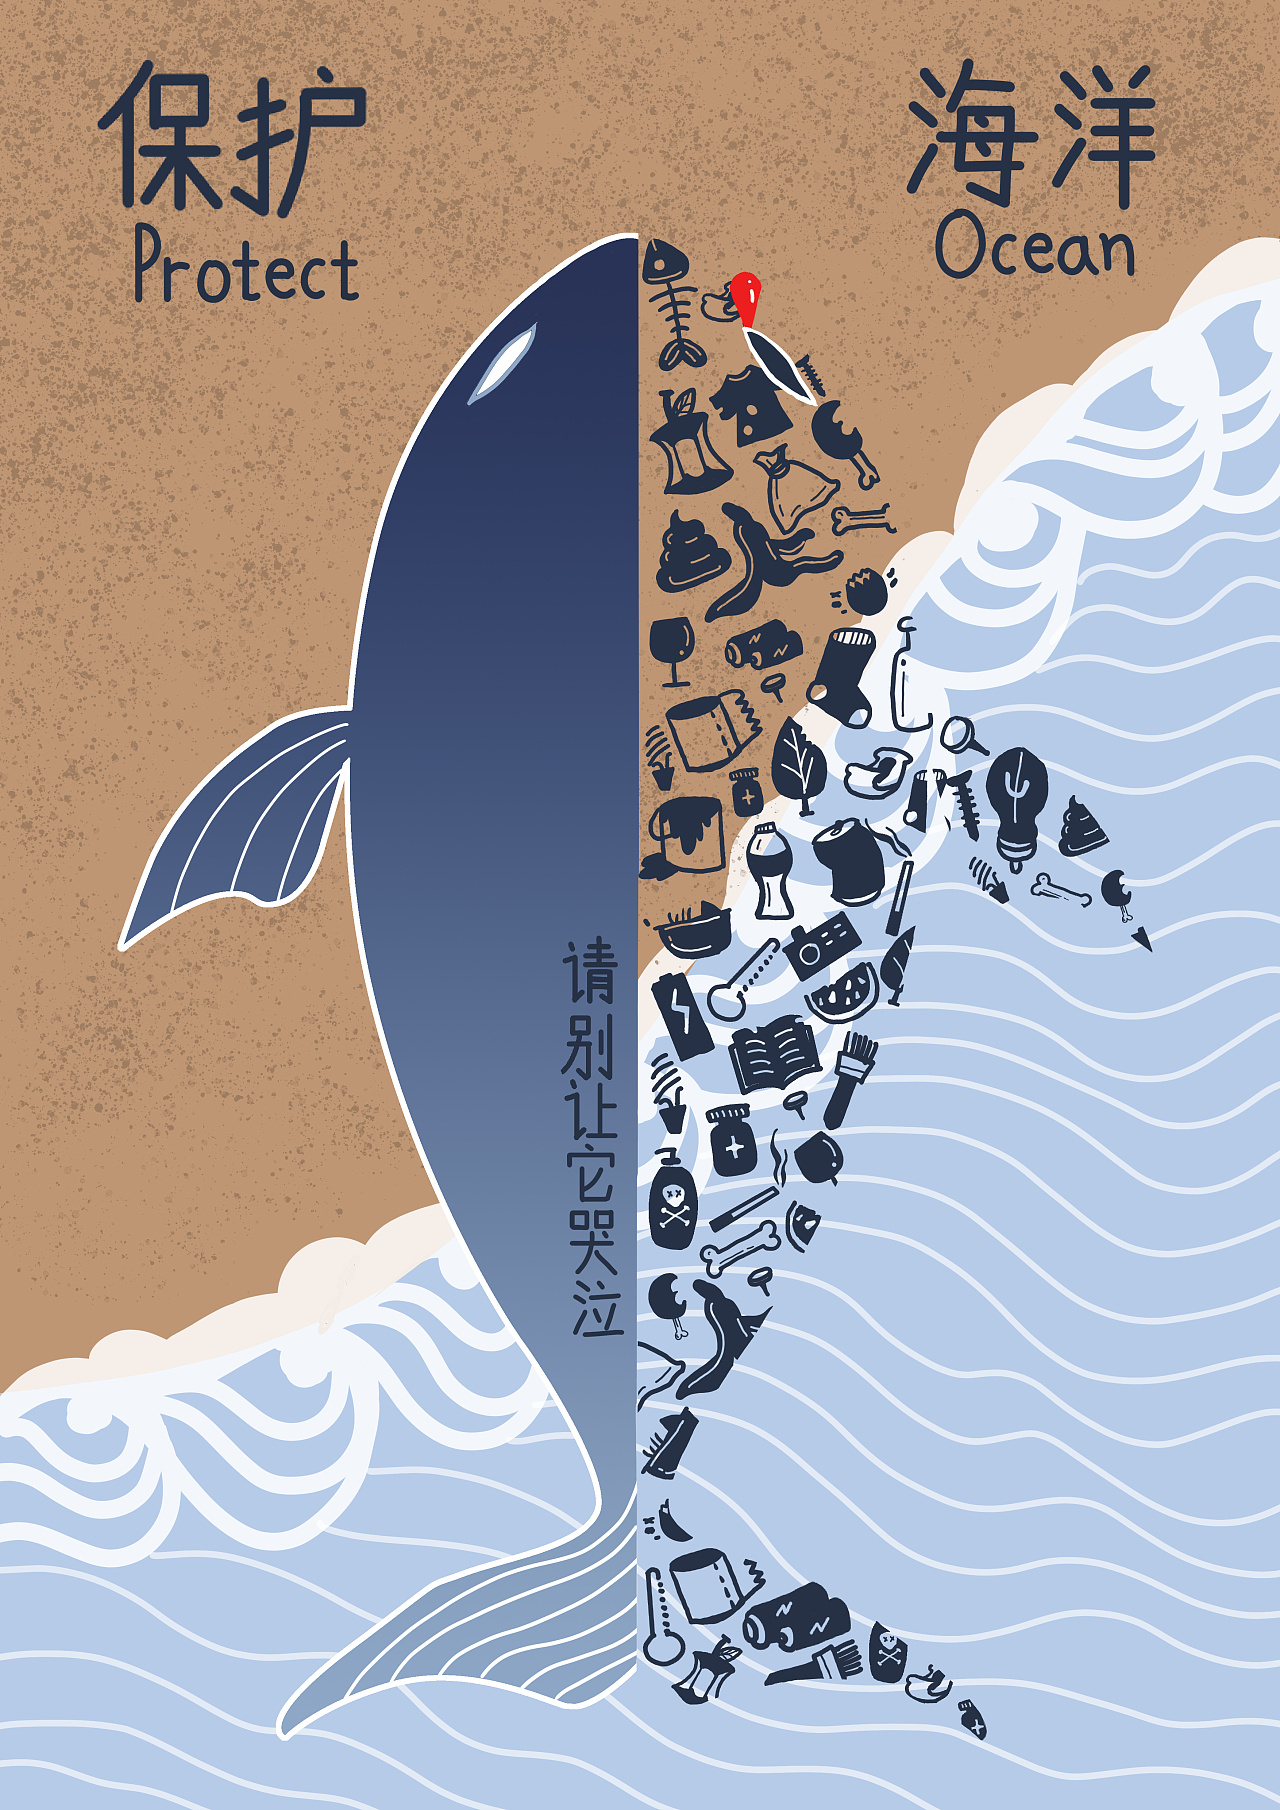 保护海洋公益海报